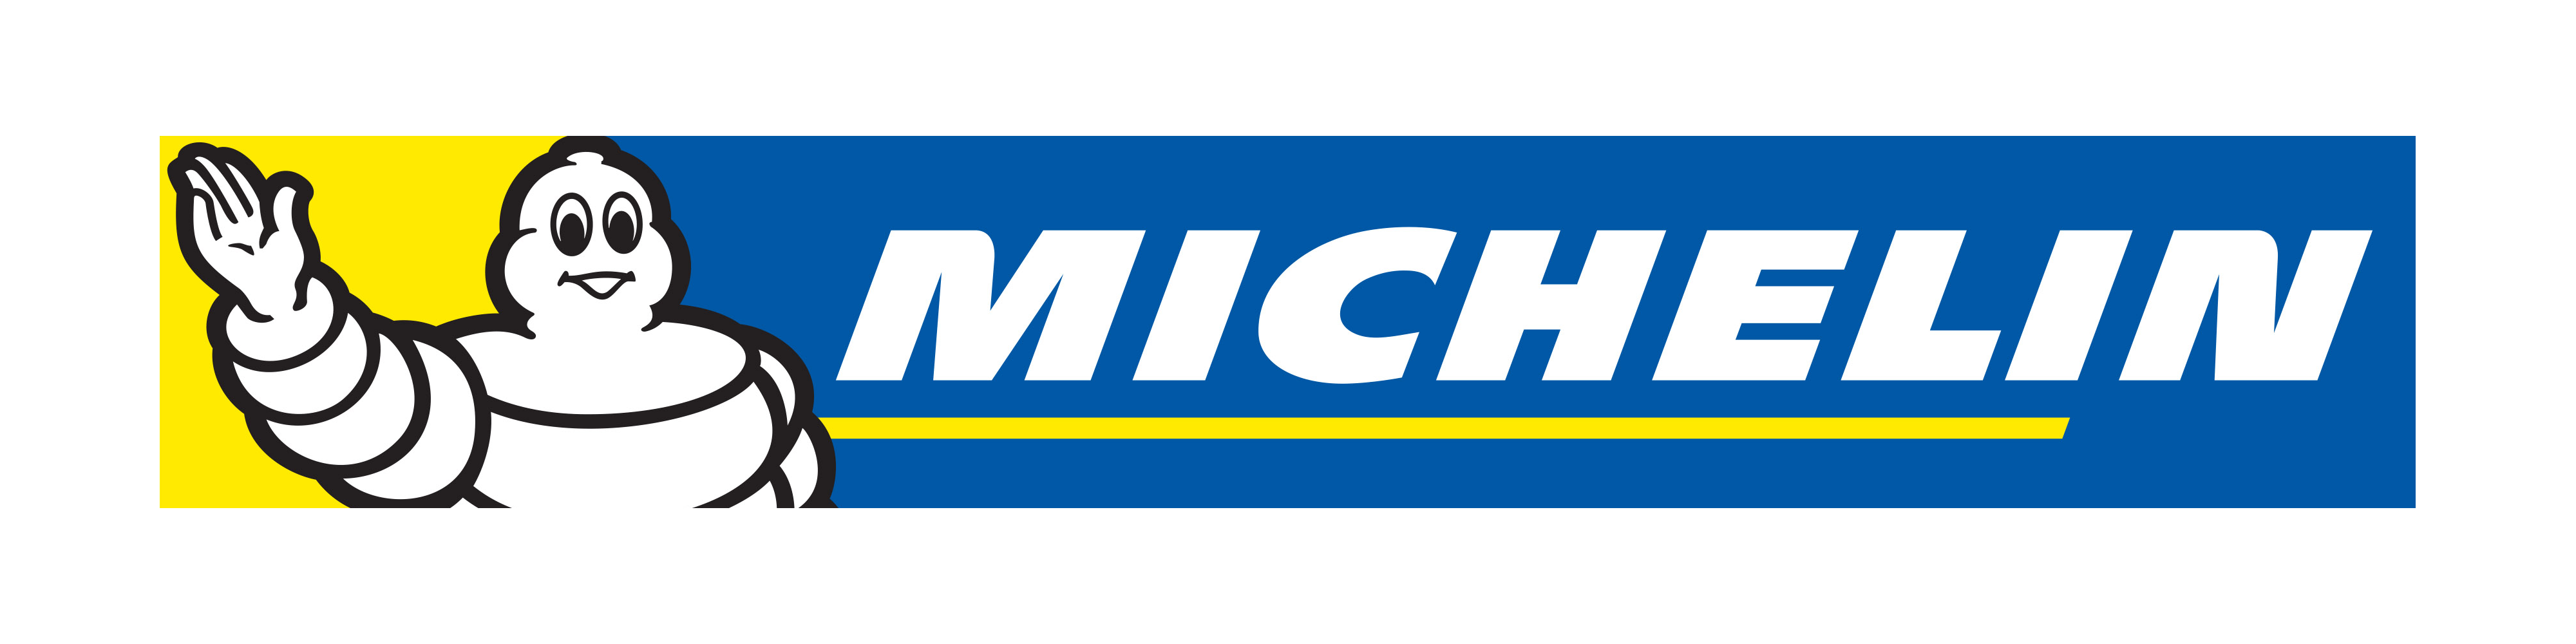 michellin company logo